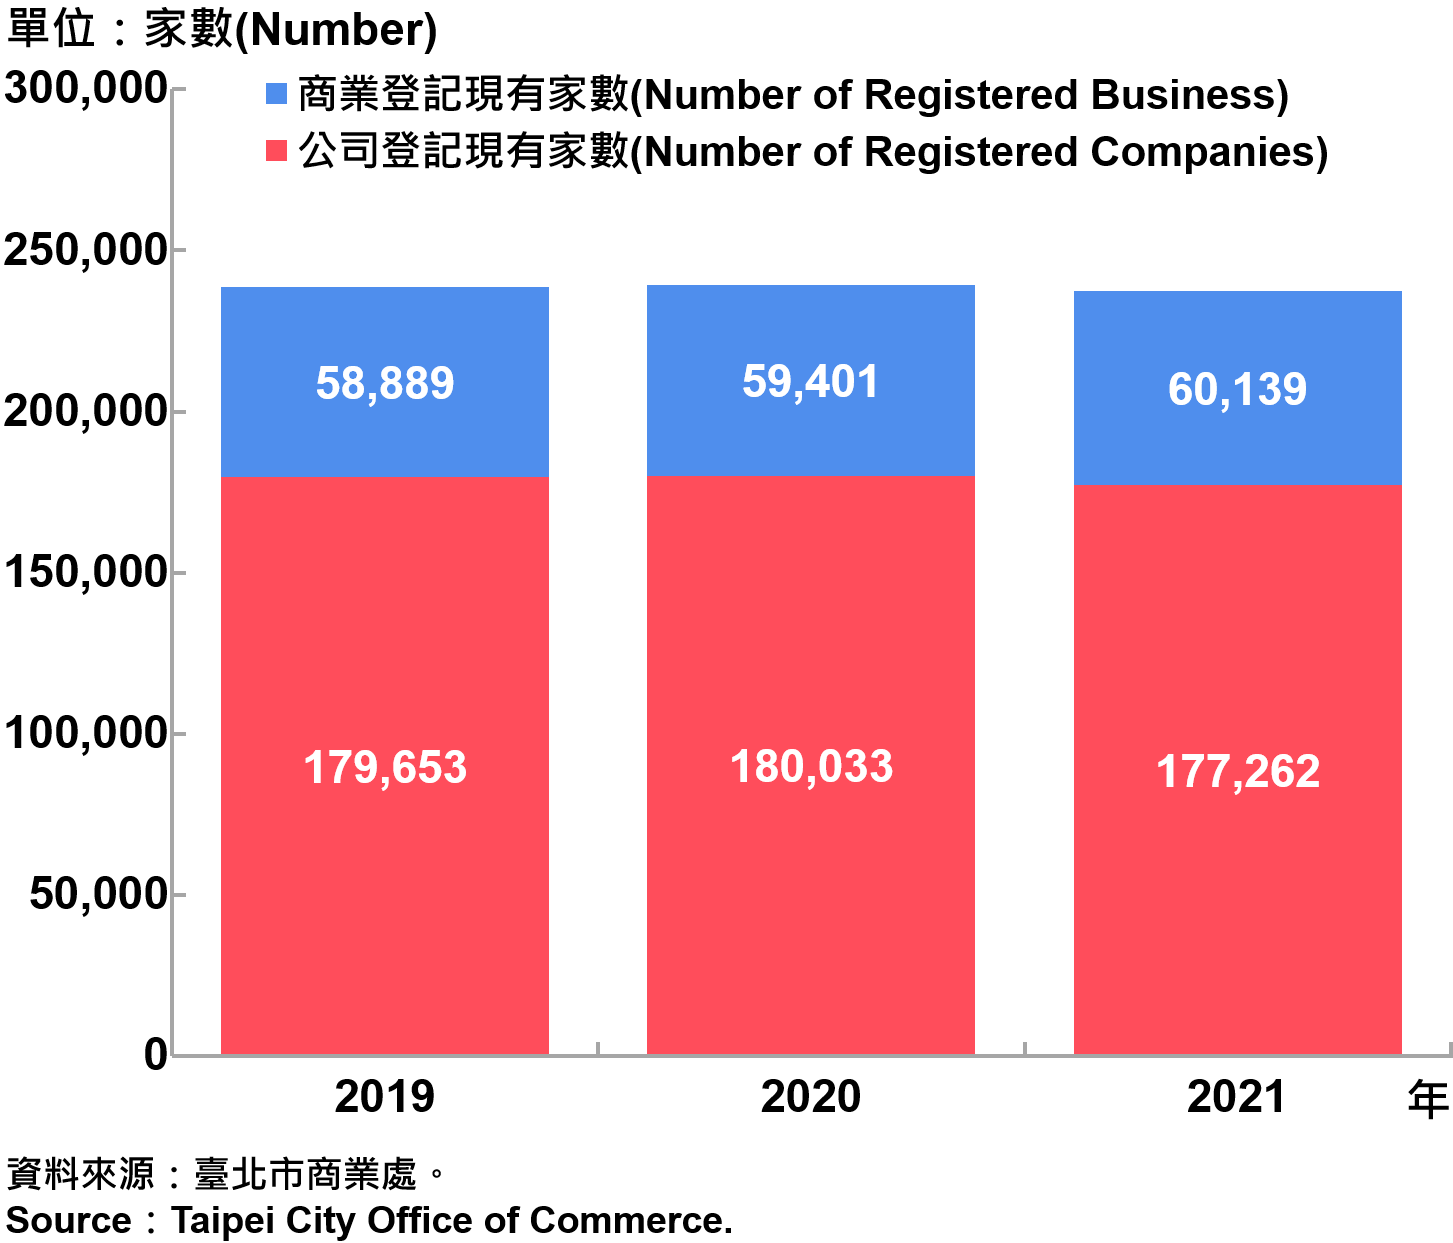 臺北市工商登記家數—2021 Industry & Business Registration in Taipei City—2021